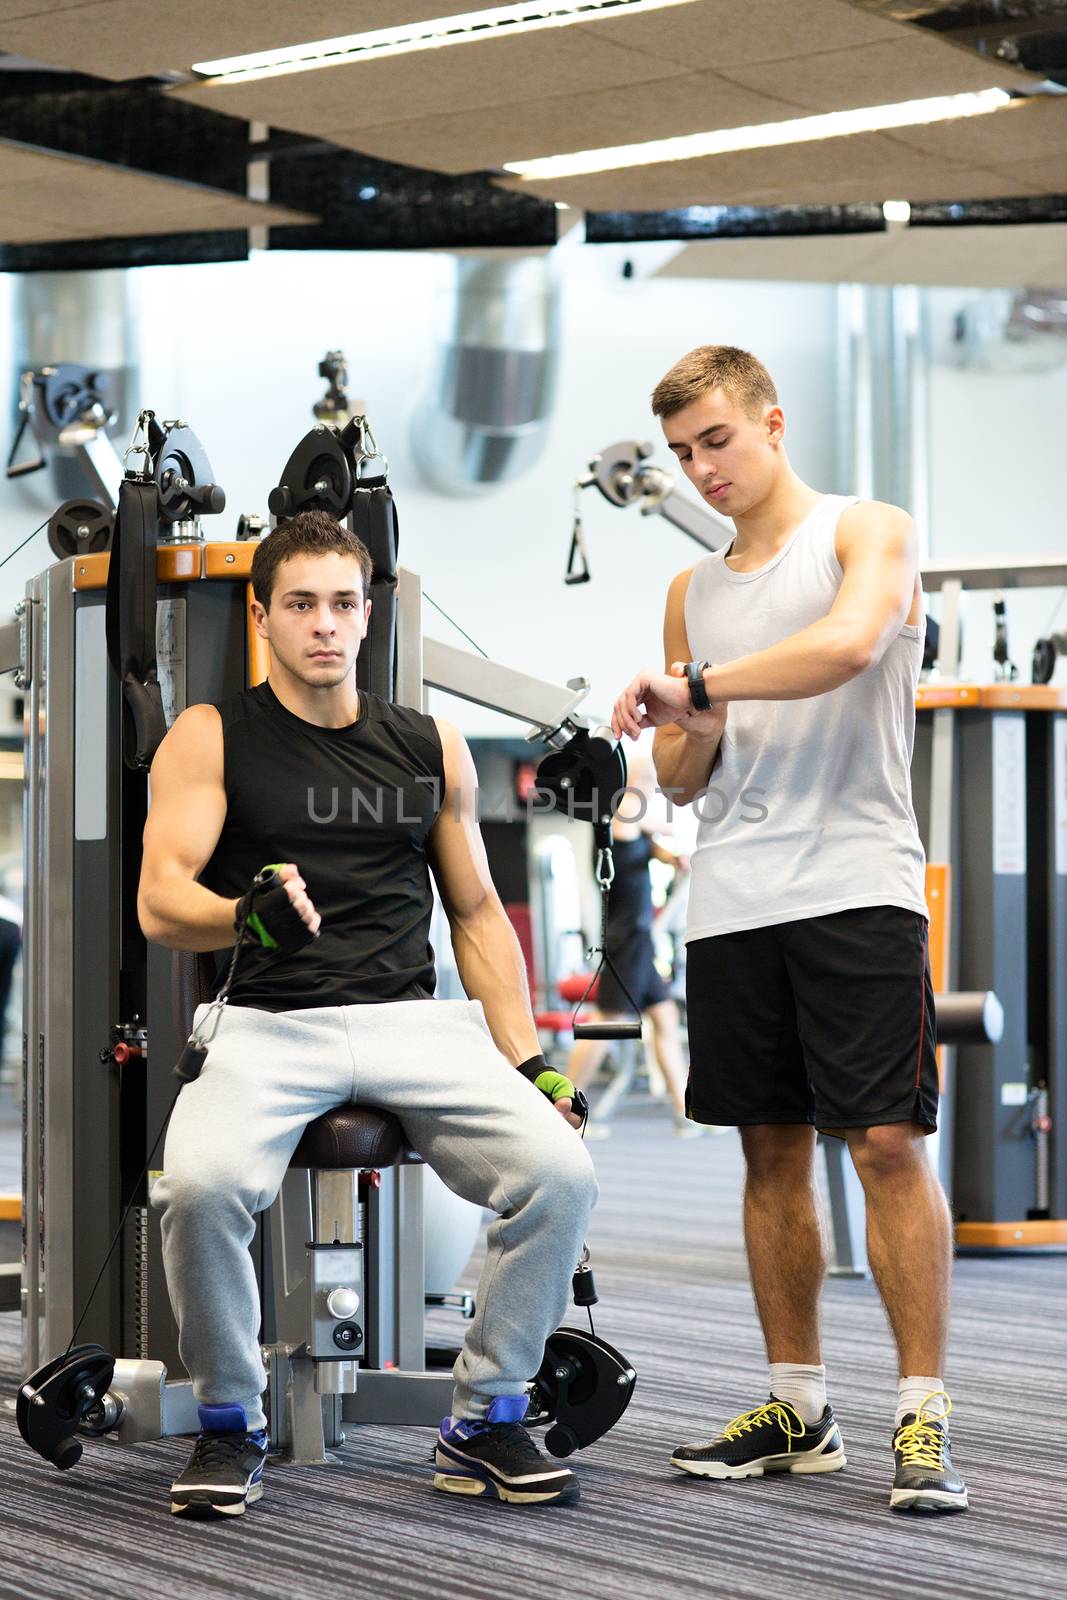 men exercising on gym machine by dolgachov